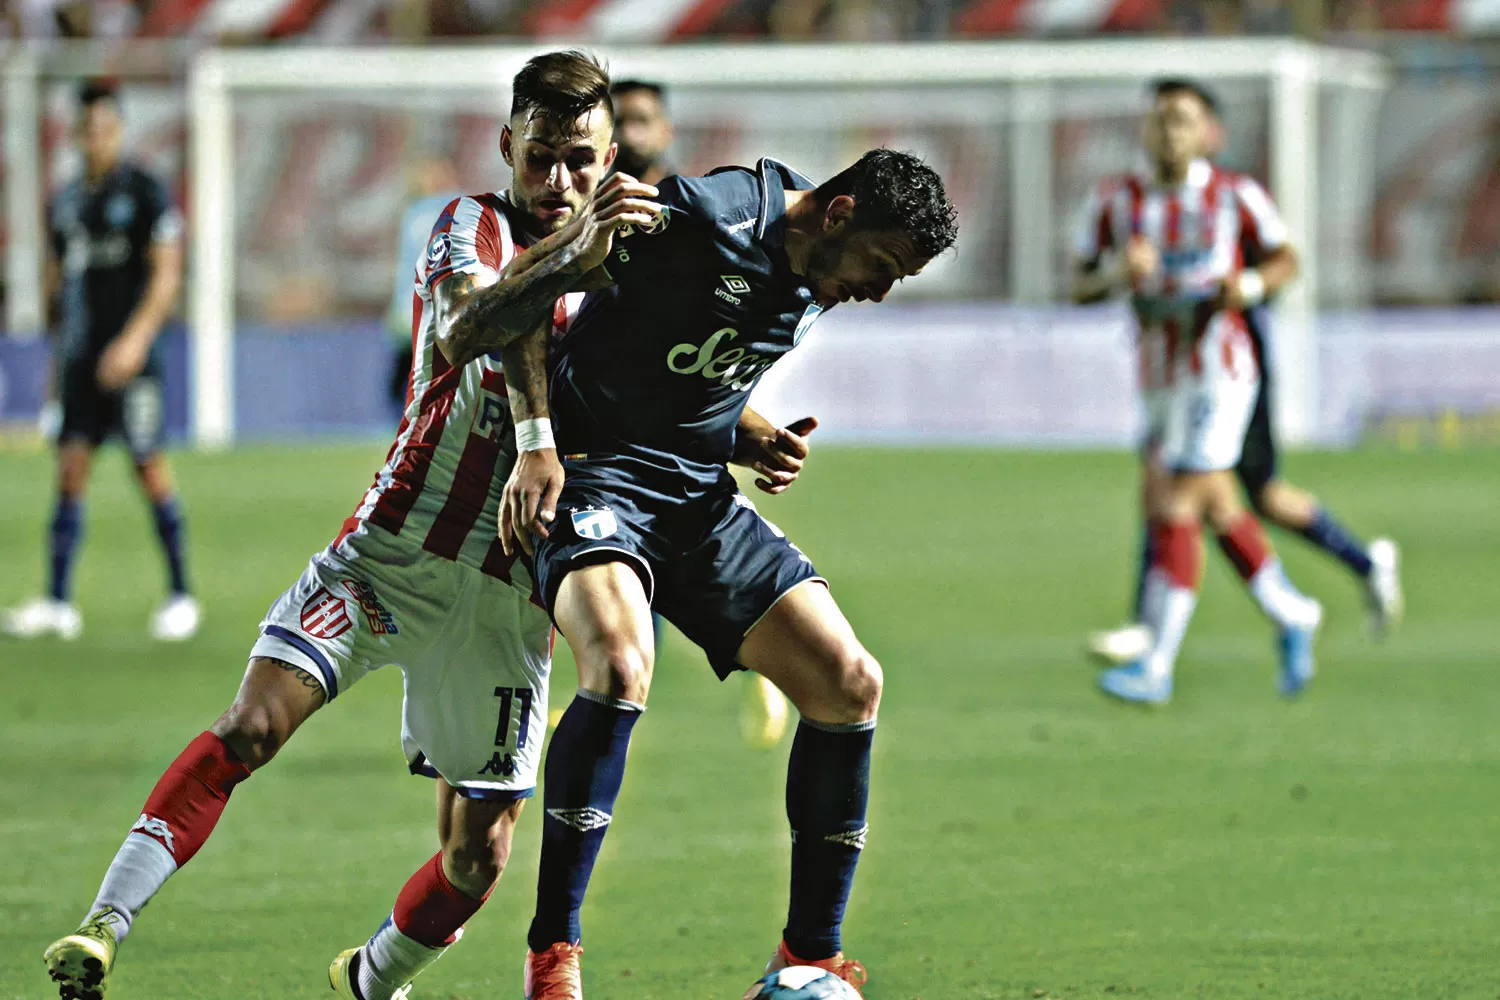 REVANCHA. Castellani, que jugó el mejor partido en Atlético, armó la jugada del gol que le dio el triunfo al “Decano”. 